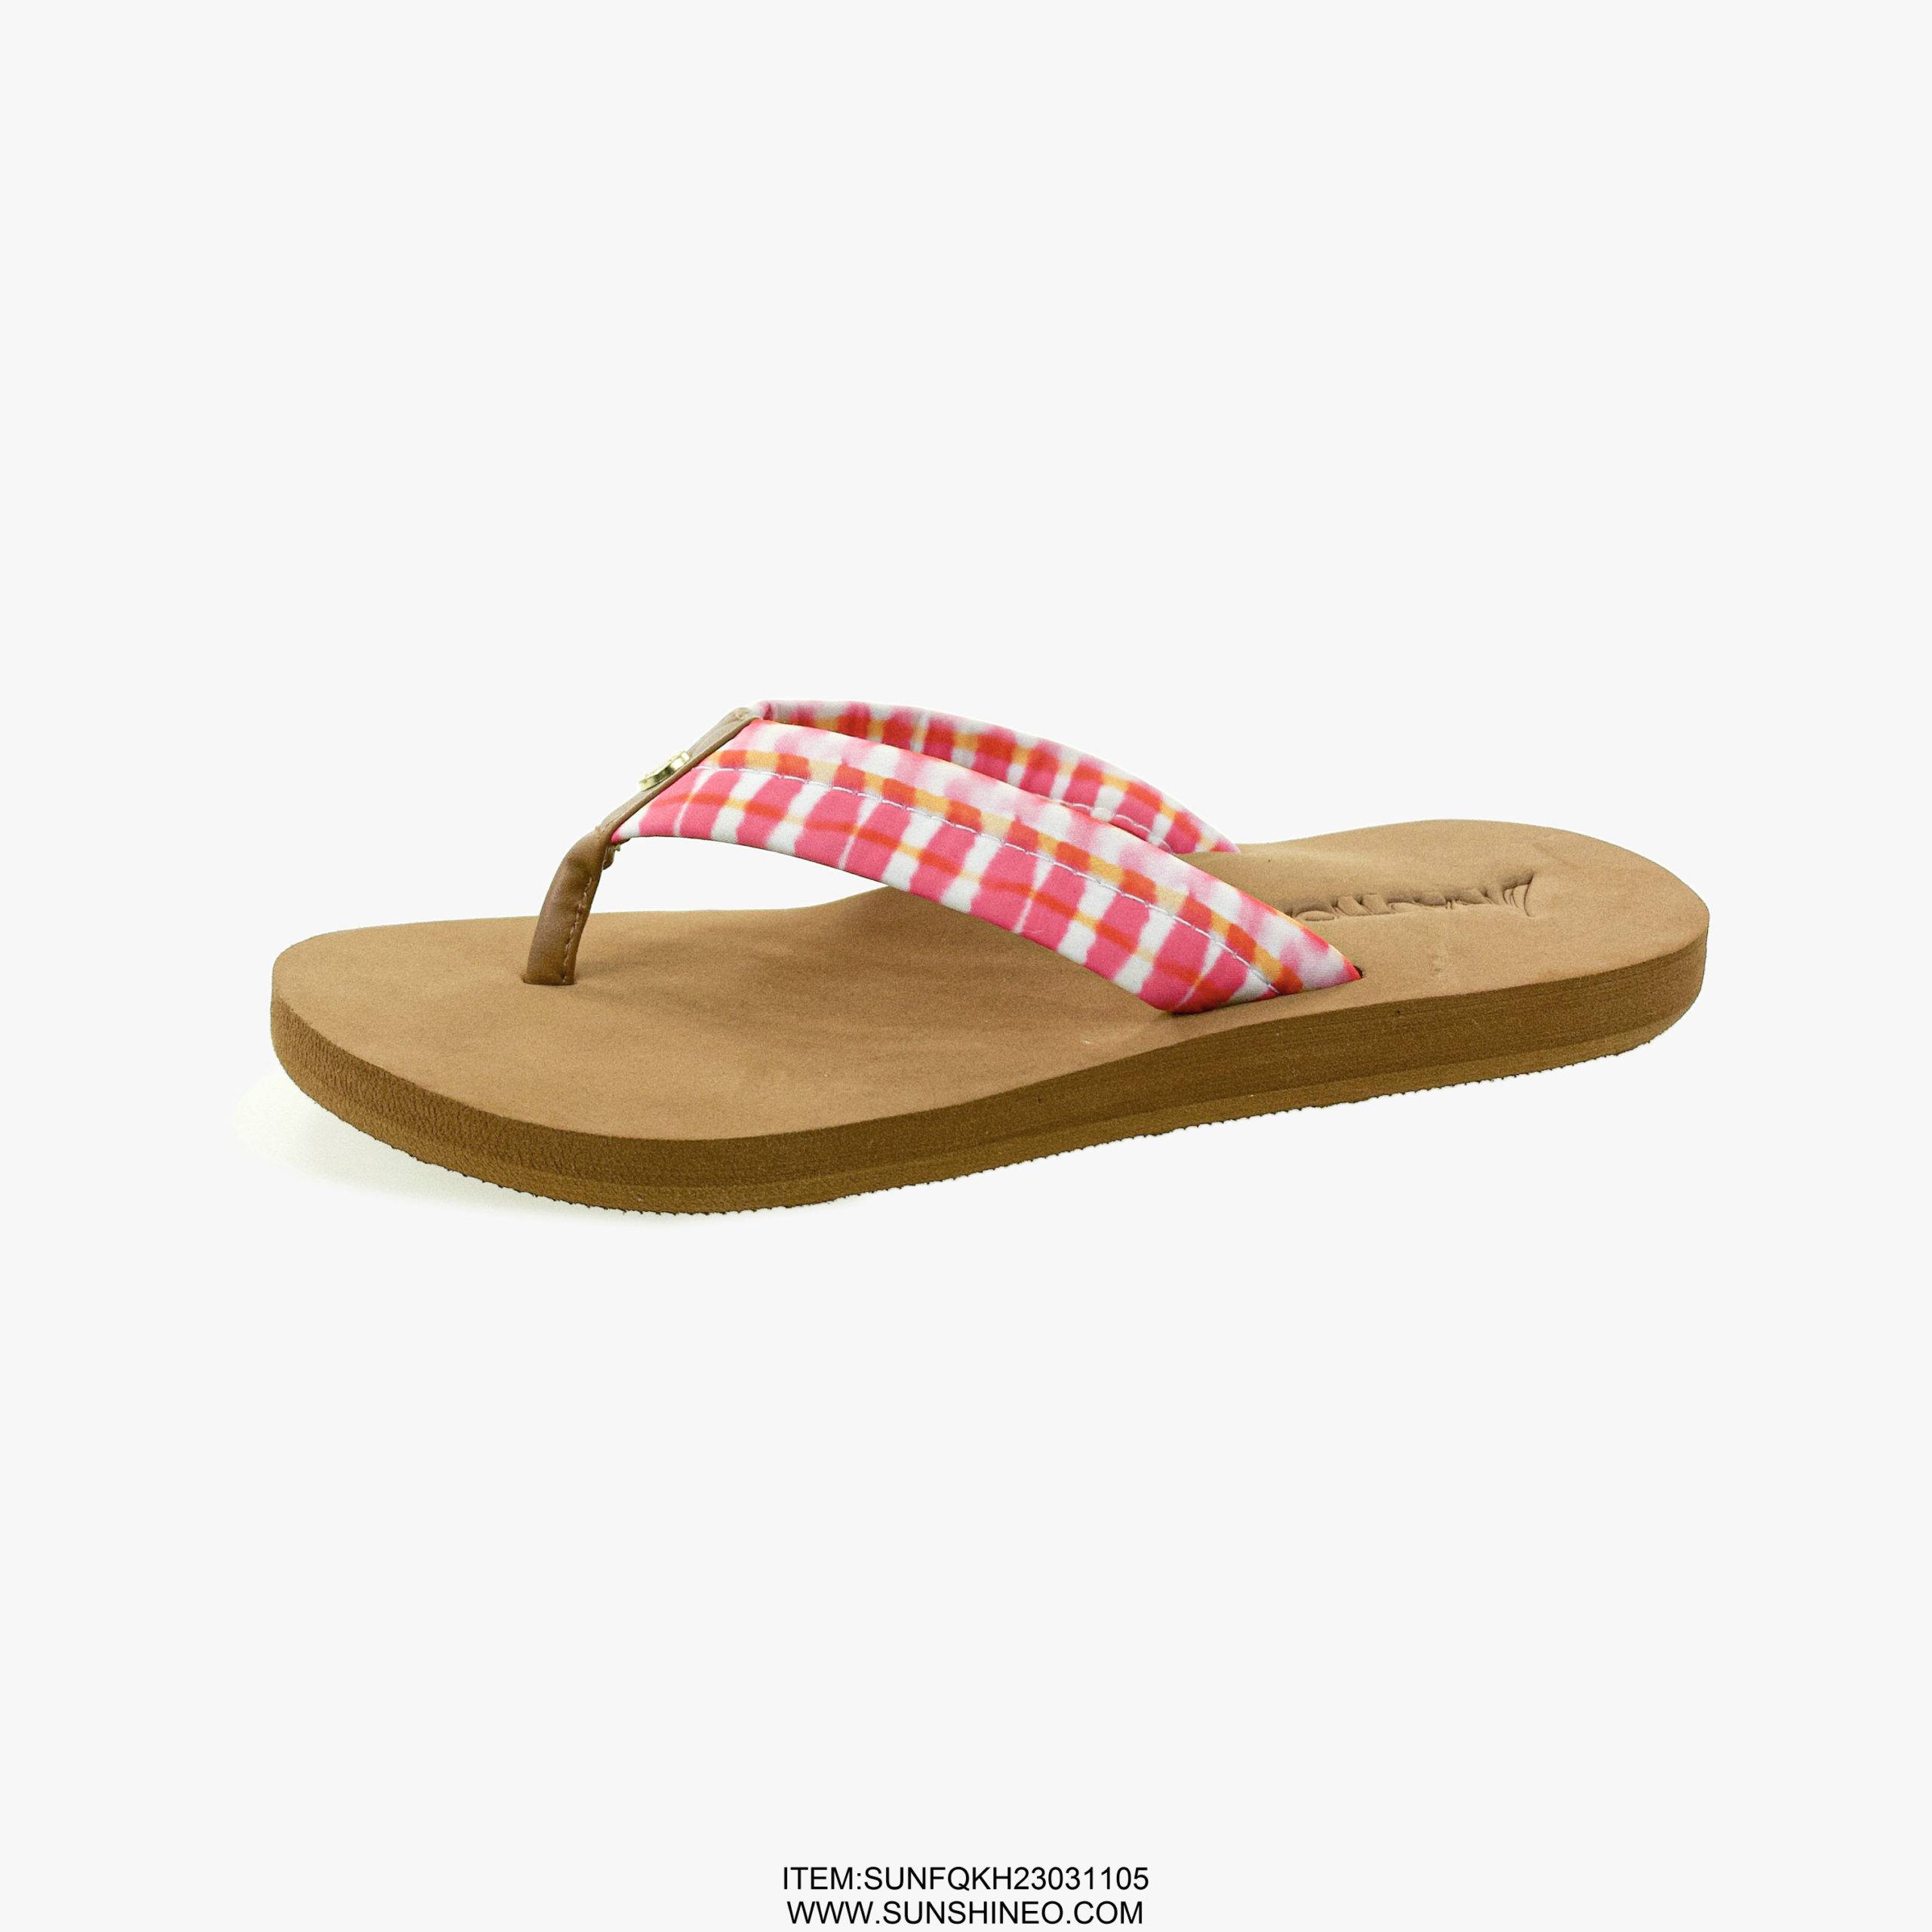 SUNFQKH23031105 flip flop sandals